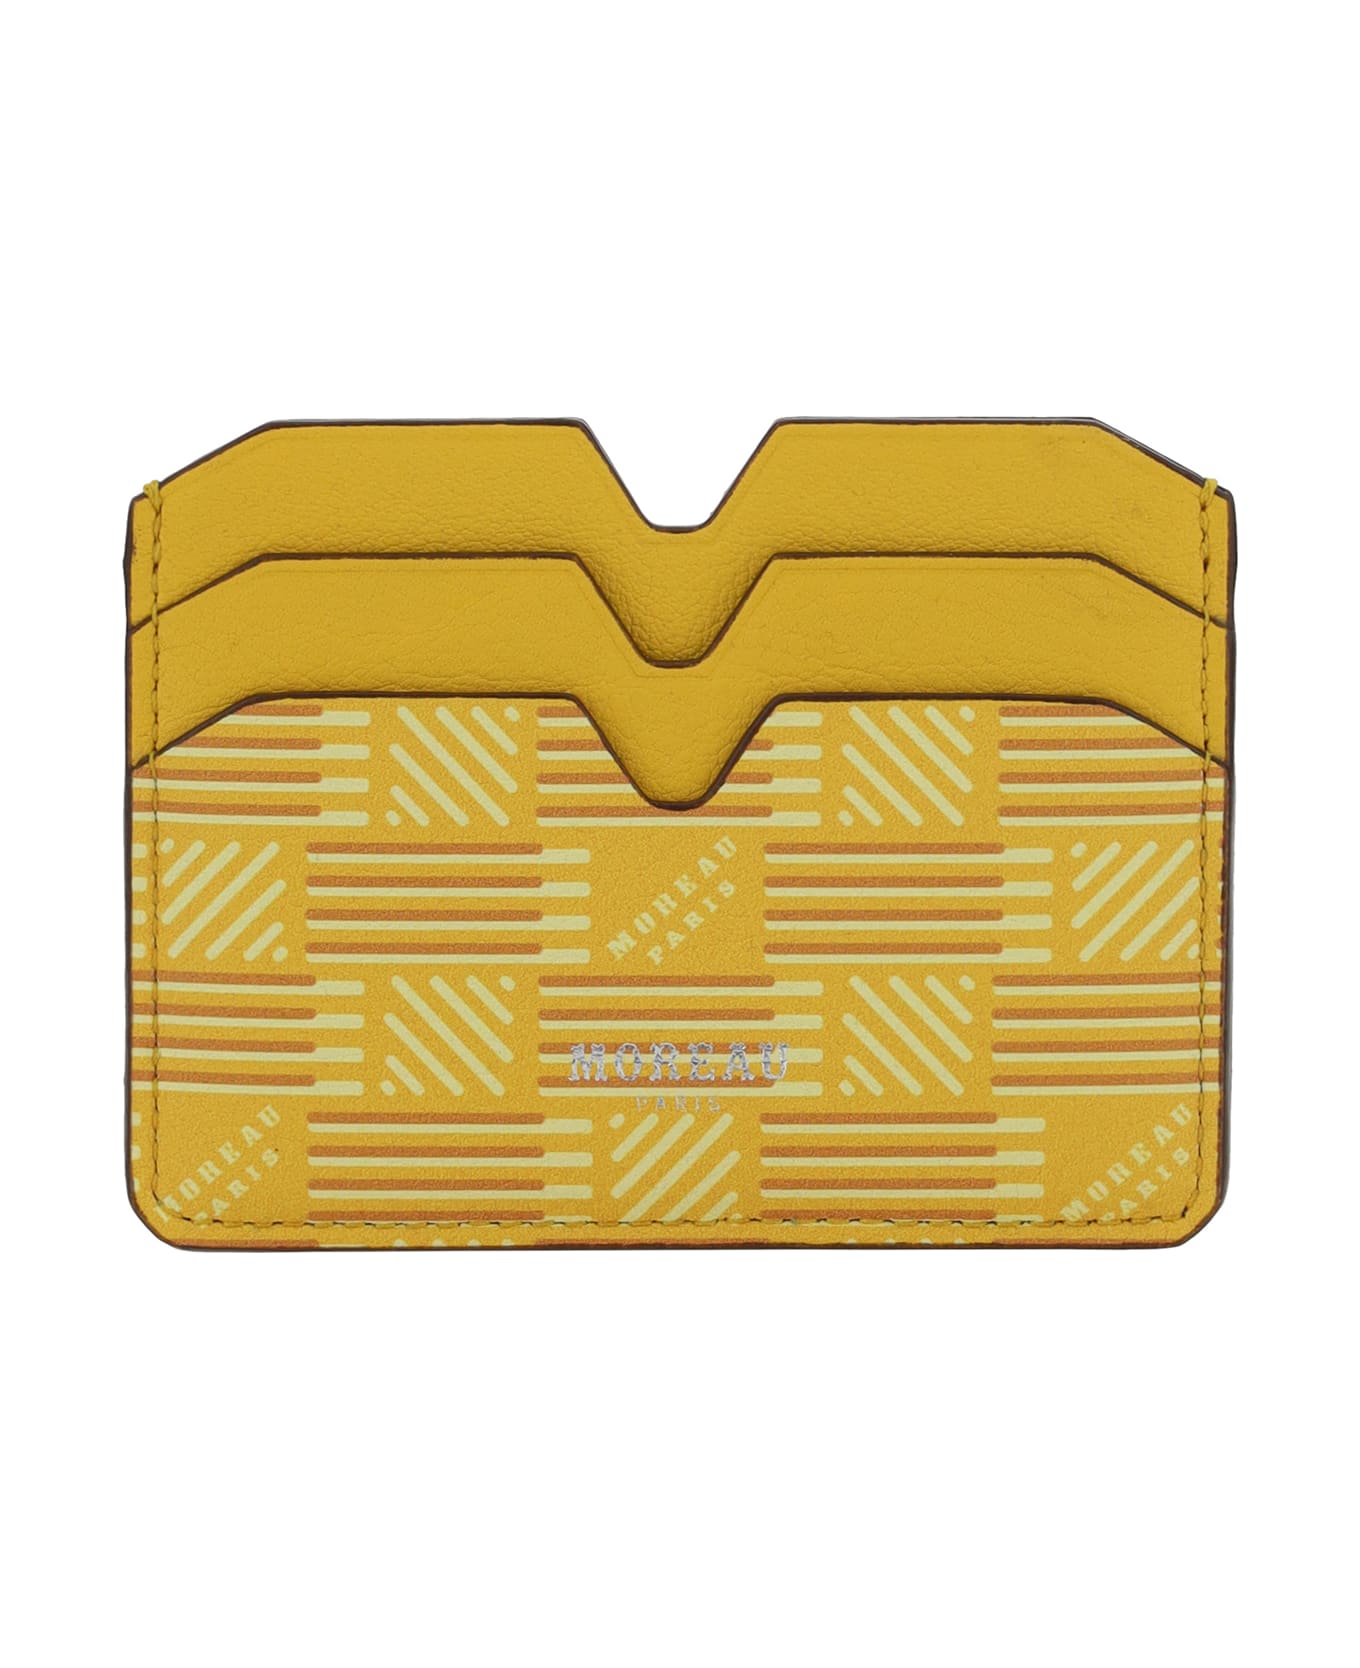 Moreau Paris Credit Card - Yellow